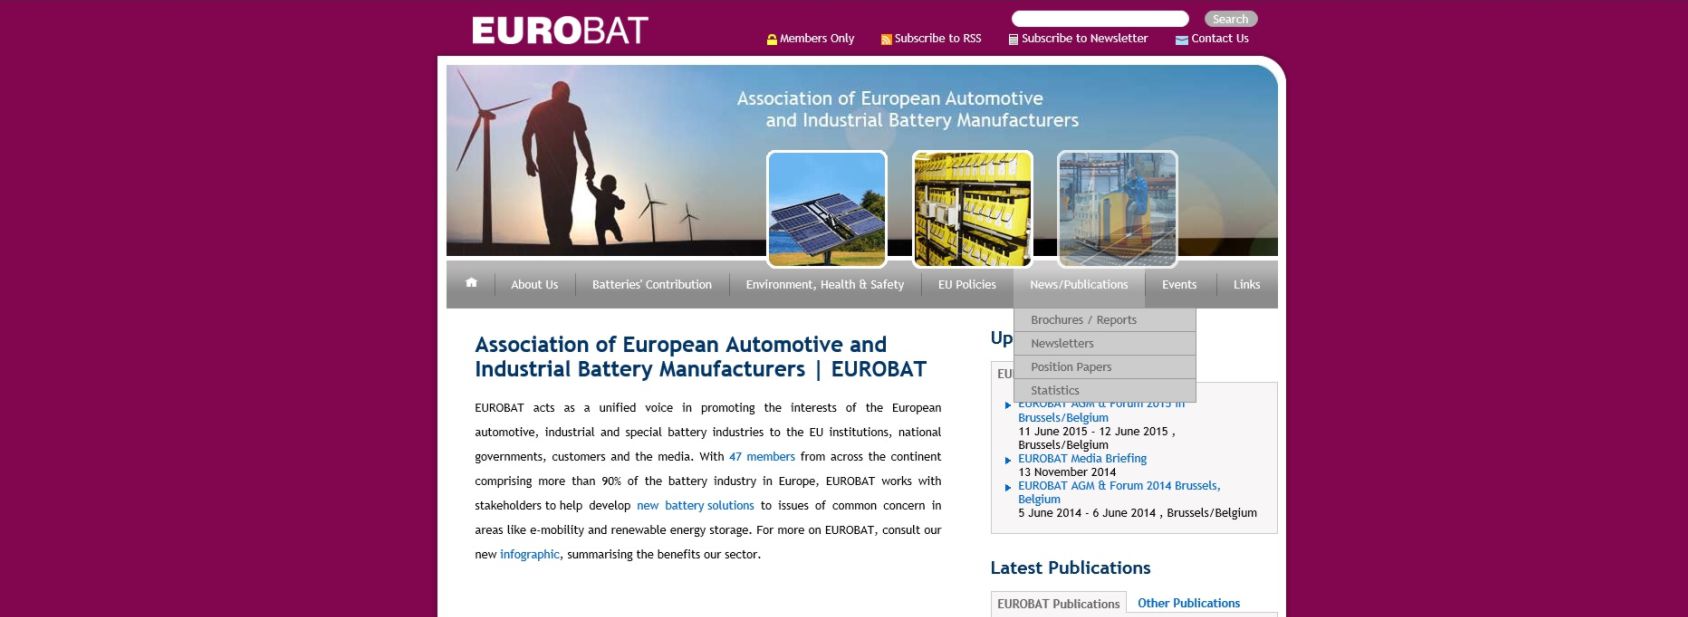 EURO BAT - Ассоциация европейских производителей промышленных и автомобильных аккумуляторов   http://www